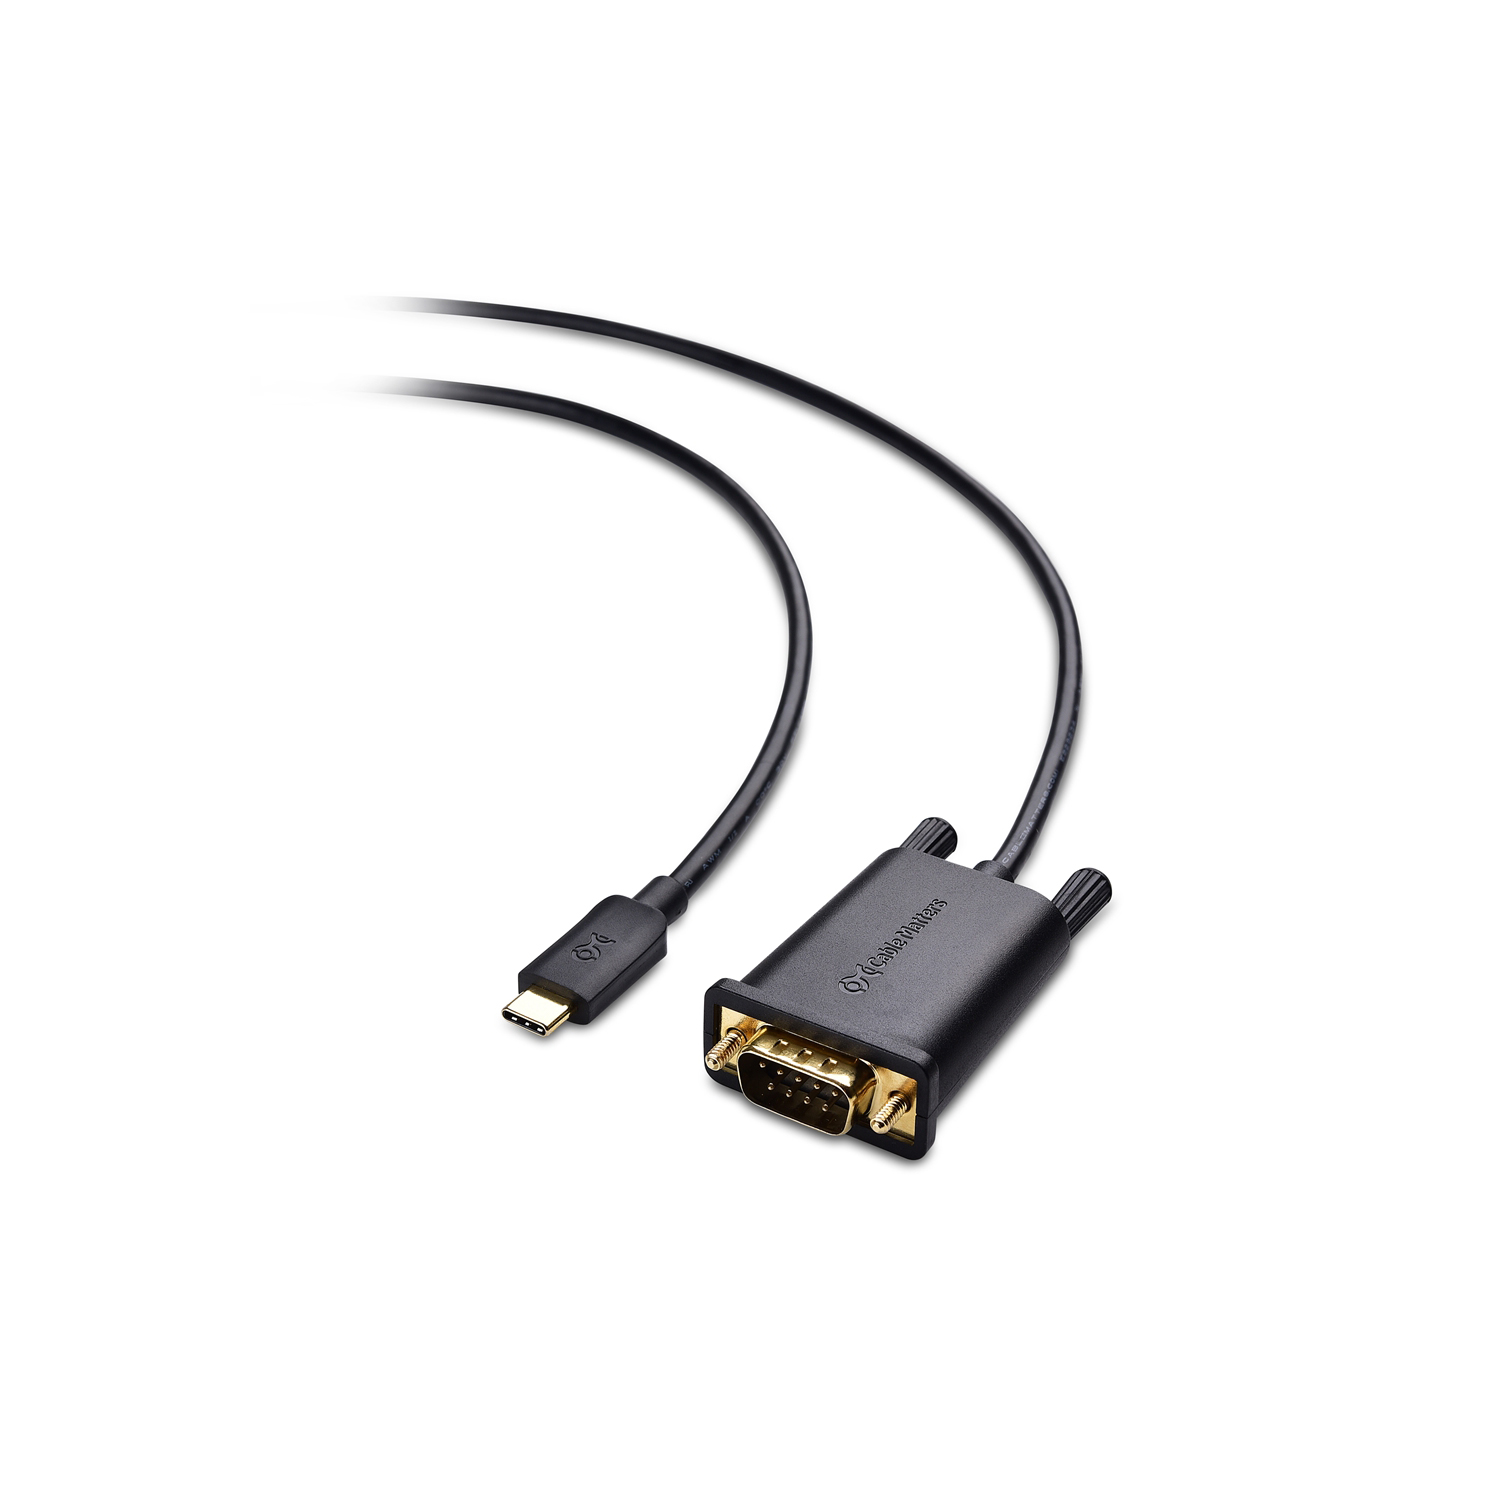 USB-C to USB Mini Adapter